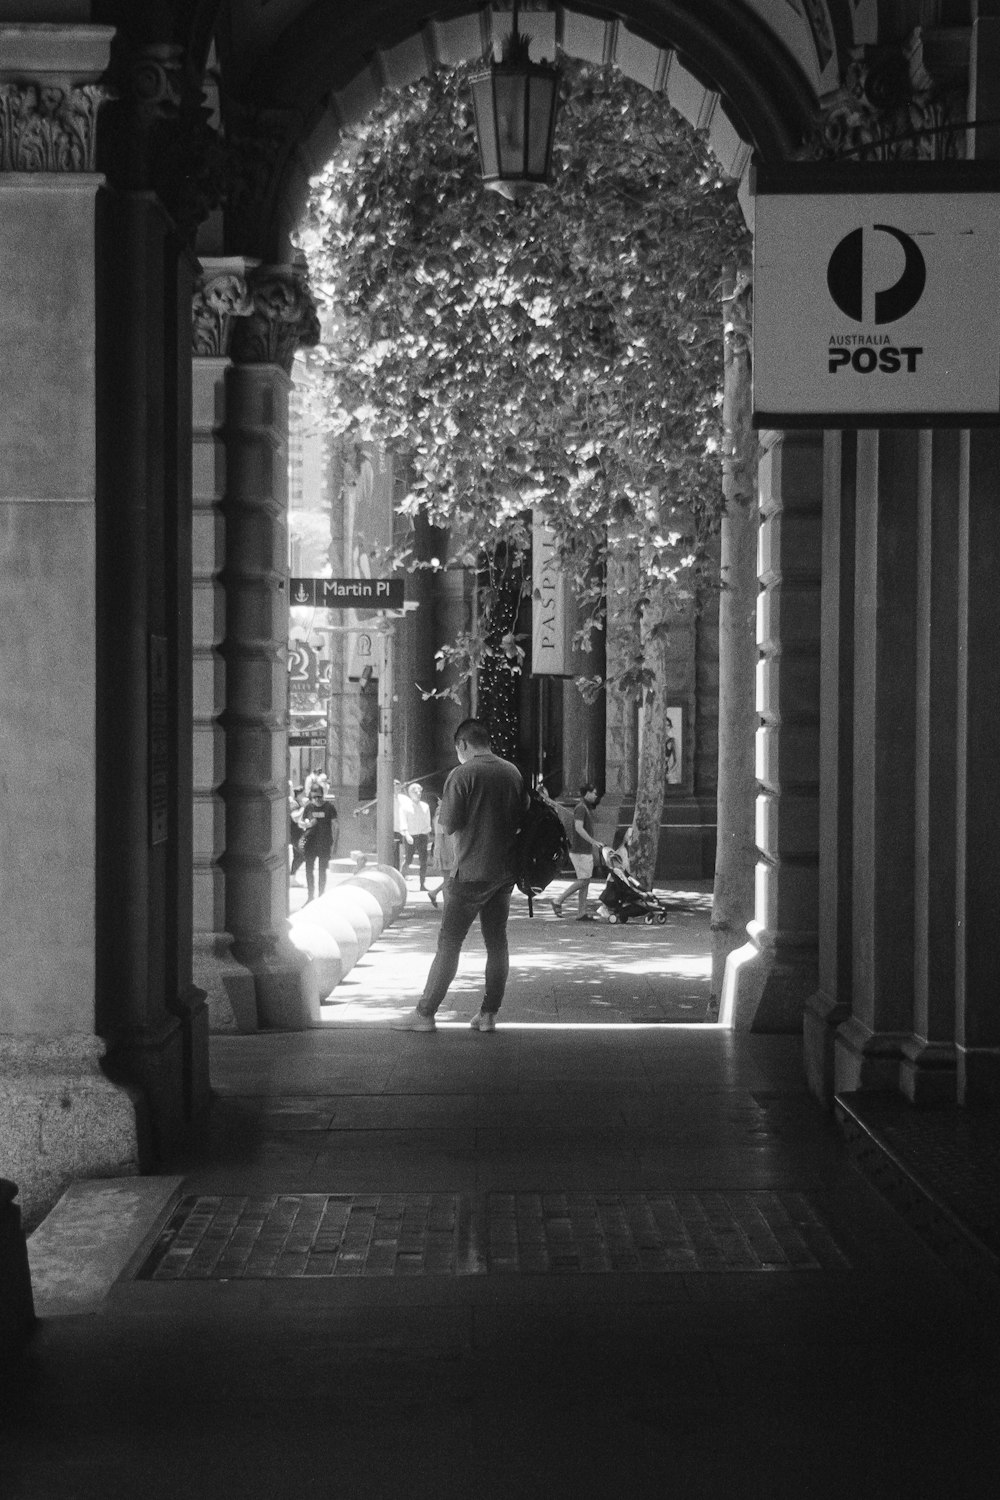 a man walking down a sidewalk under an arch